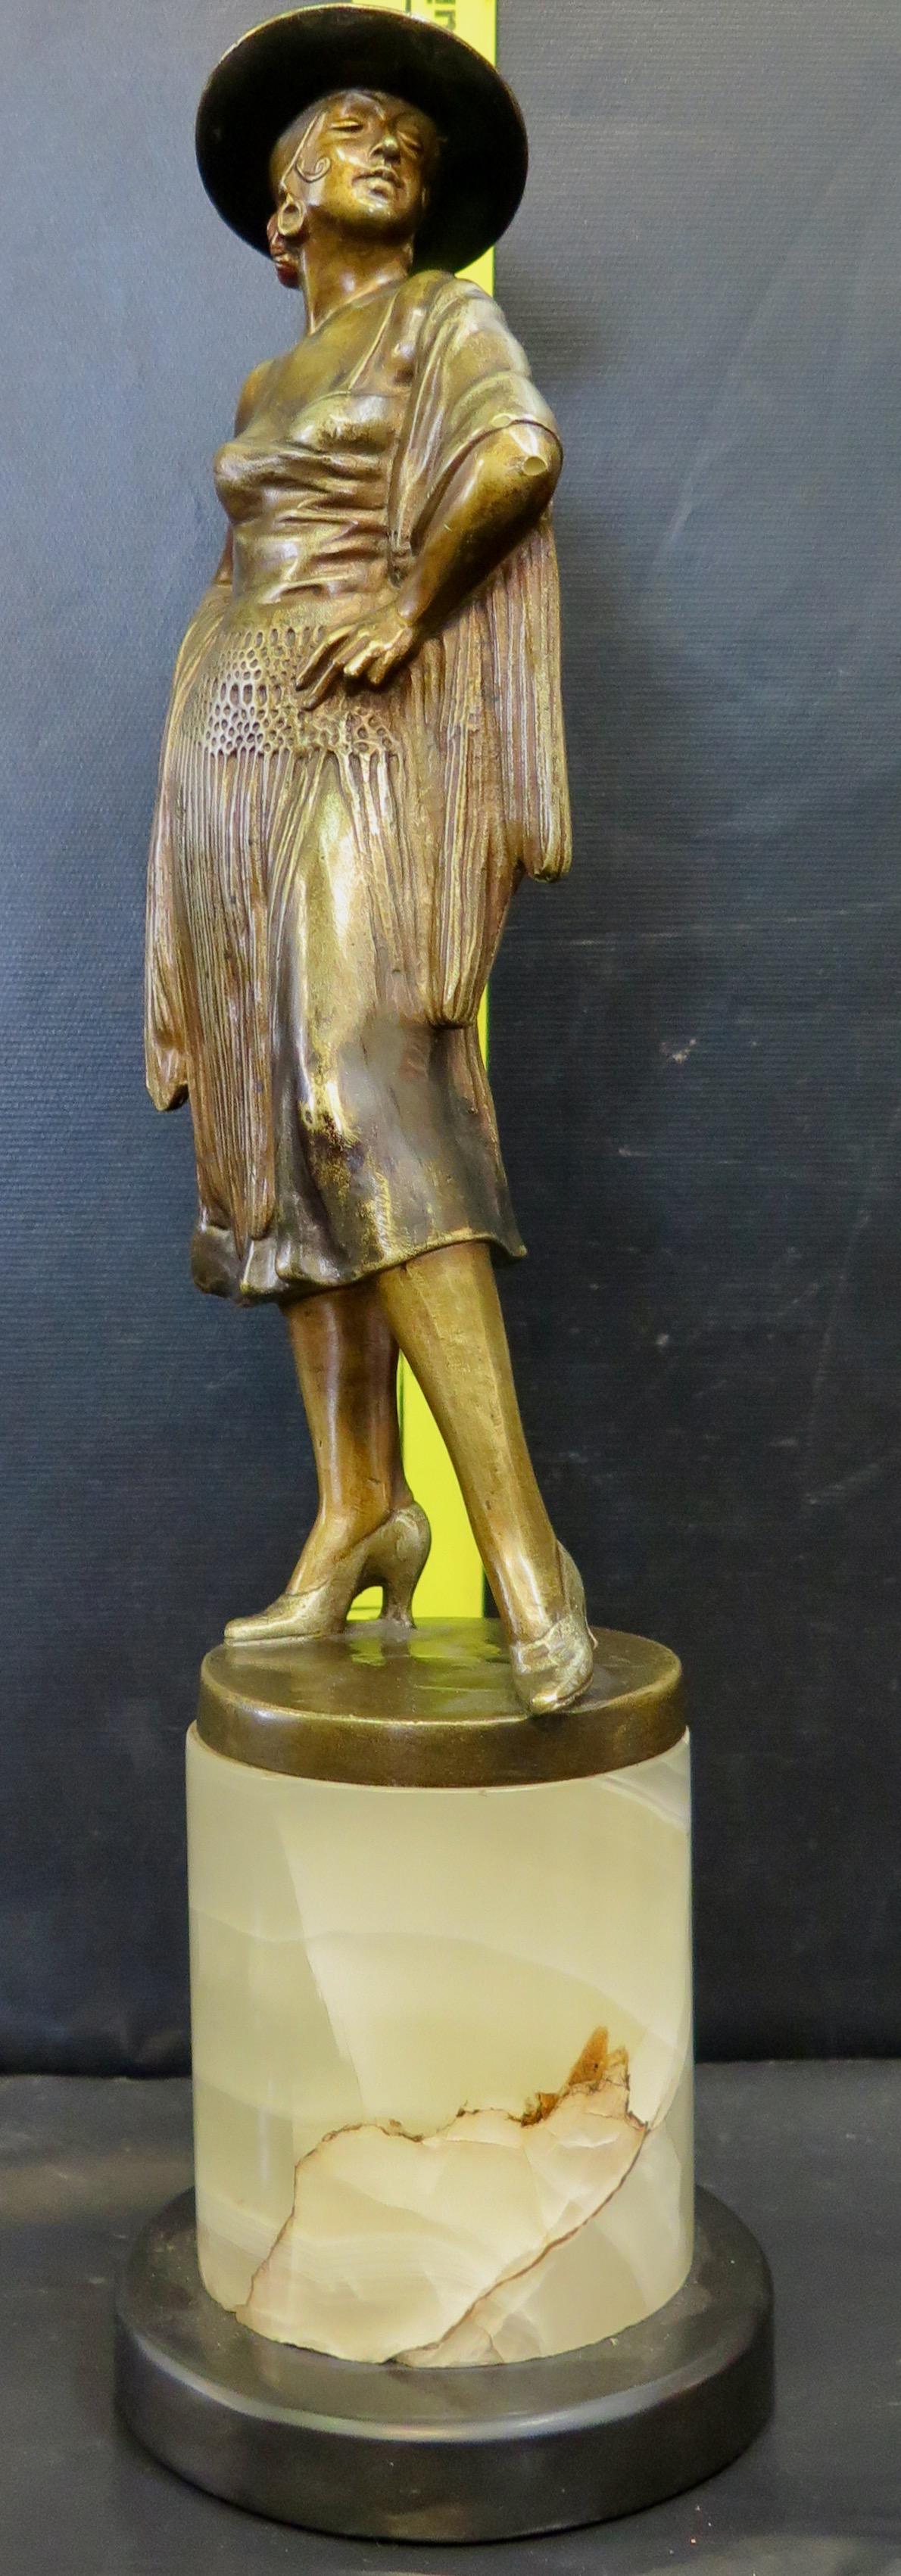 Eine beeindruckende Skulptur aus patinierter Bronze im Art-Déco-Stil. Es handelt sich um die Statue einer wunderschön kostümierten und detaillierten Flamenco-Tänzerin, die einige kalt gemalte Elemente enthält. Die Bronze stammt von Bruno Zach (alias